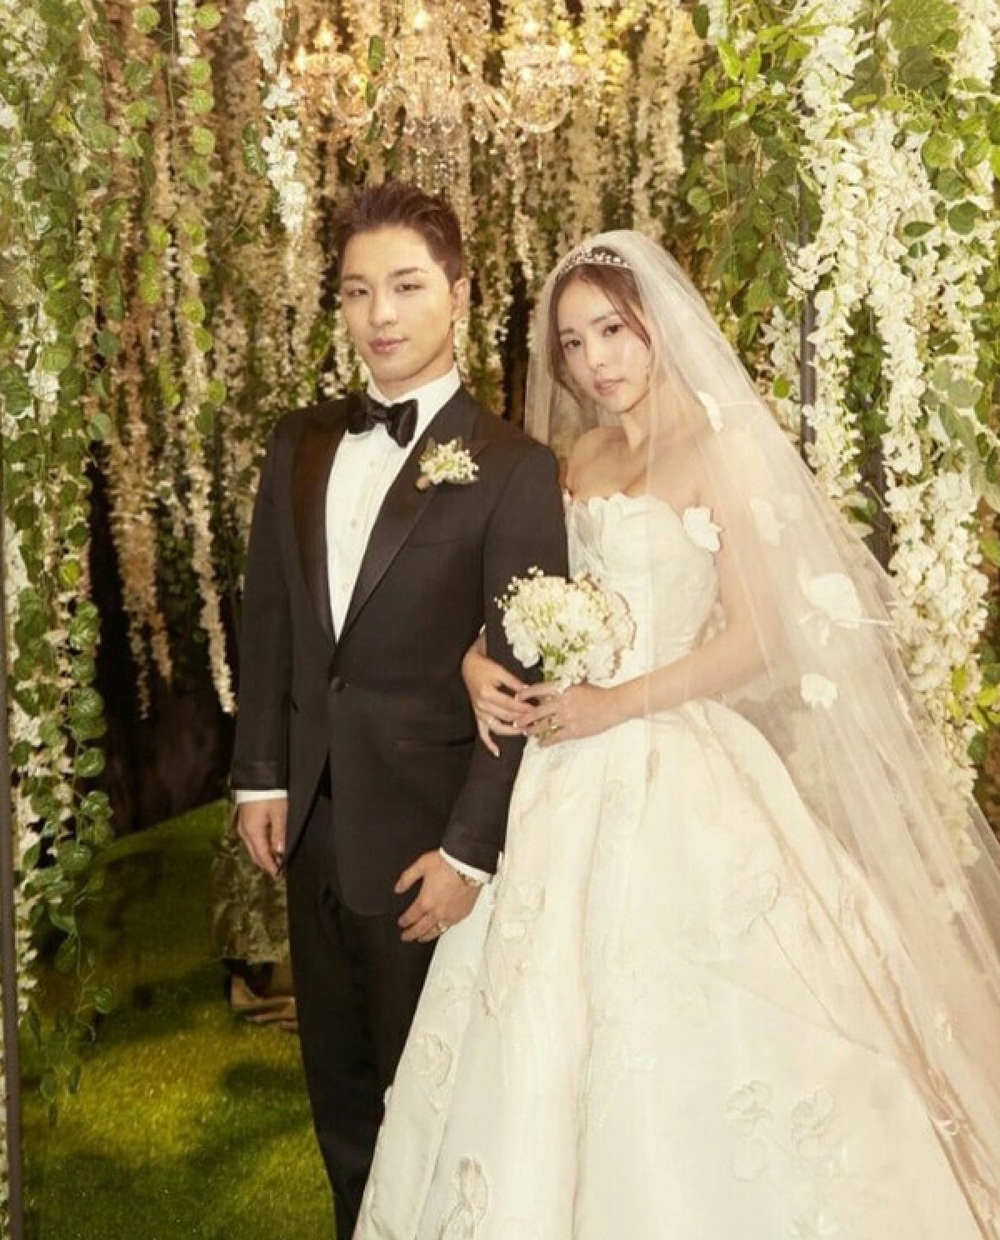  
Min Hyo Rin và Taeyang (Big Bang) trong đám cưới. (Ảnh: Pinterest)